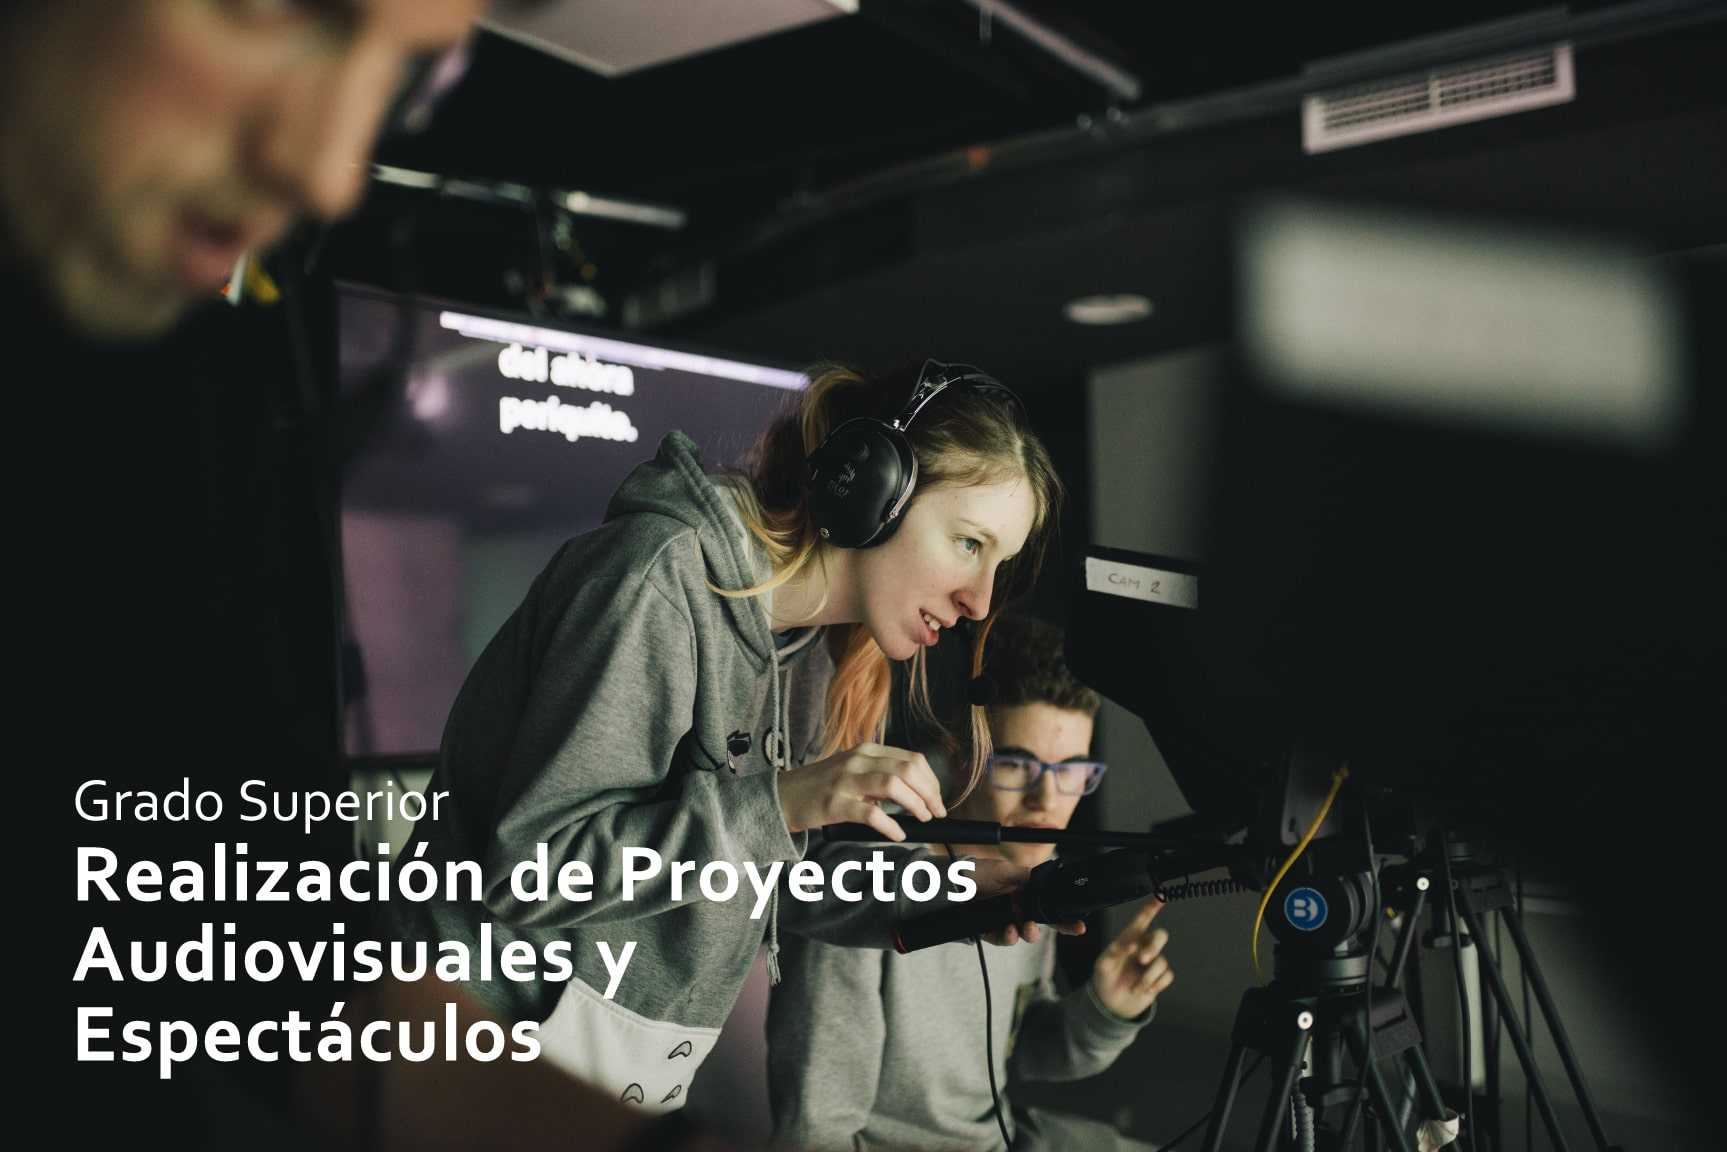 GS Realización de Proyectos Audiovisuales y Espectáculos